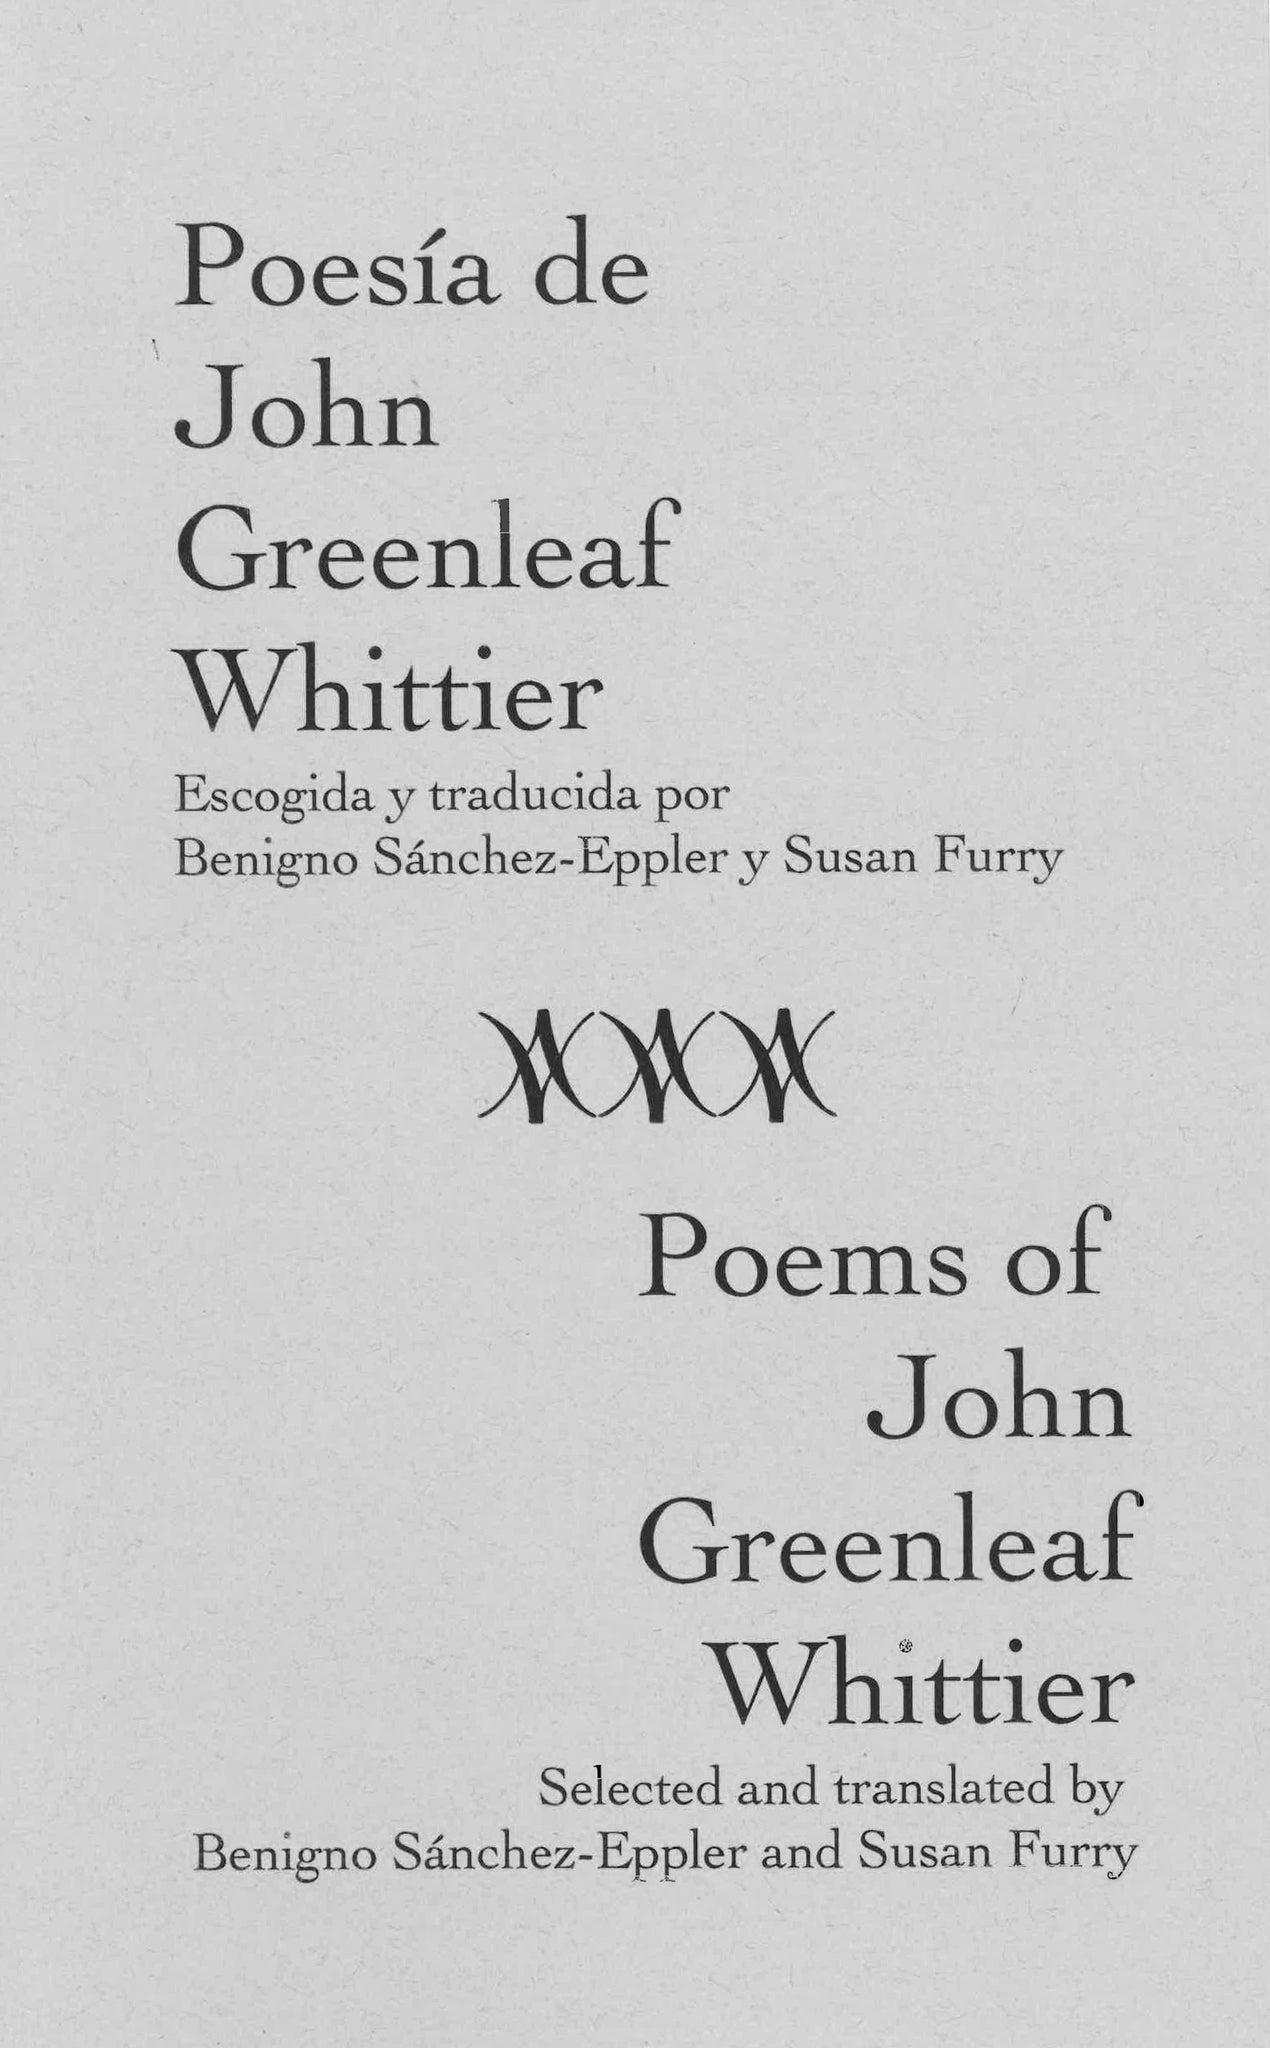 Poesia de John Greenleaf Whittier / Poems of John Greenleaf Whittier